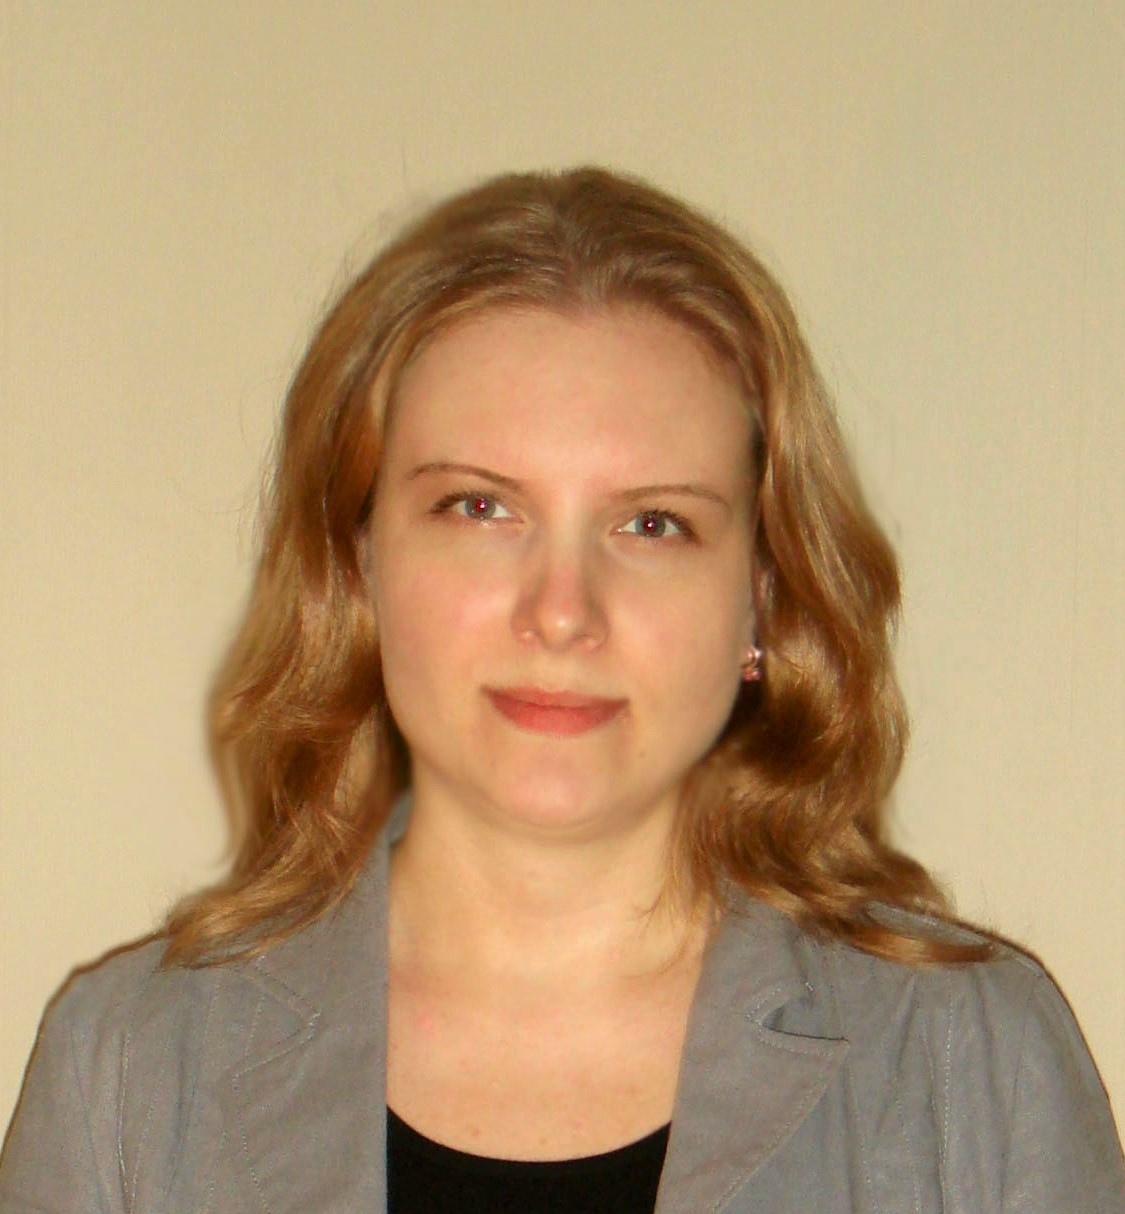 Менеджер, Дирекция образовательных программ, Программа «Мастер финансов» Юлия Калинченко